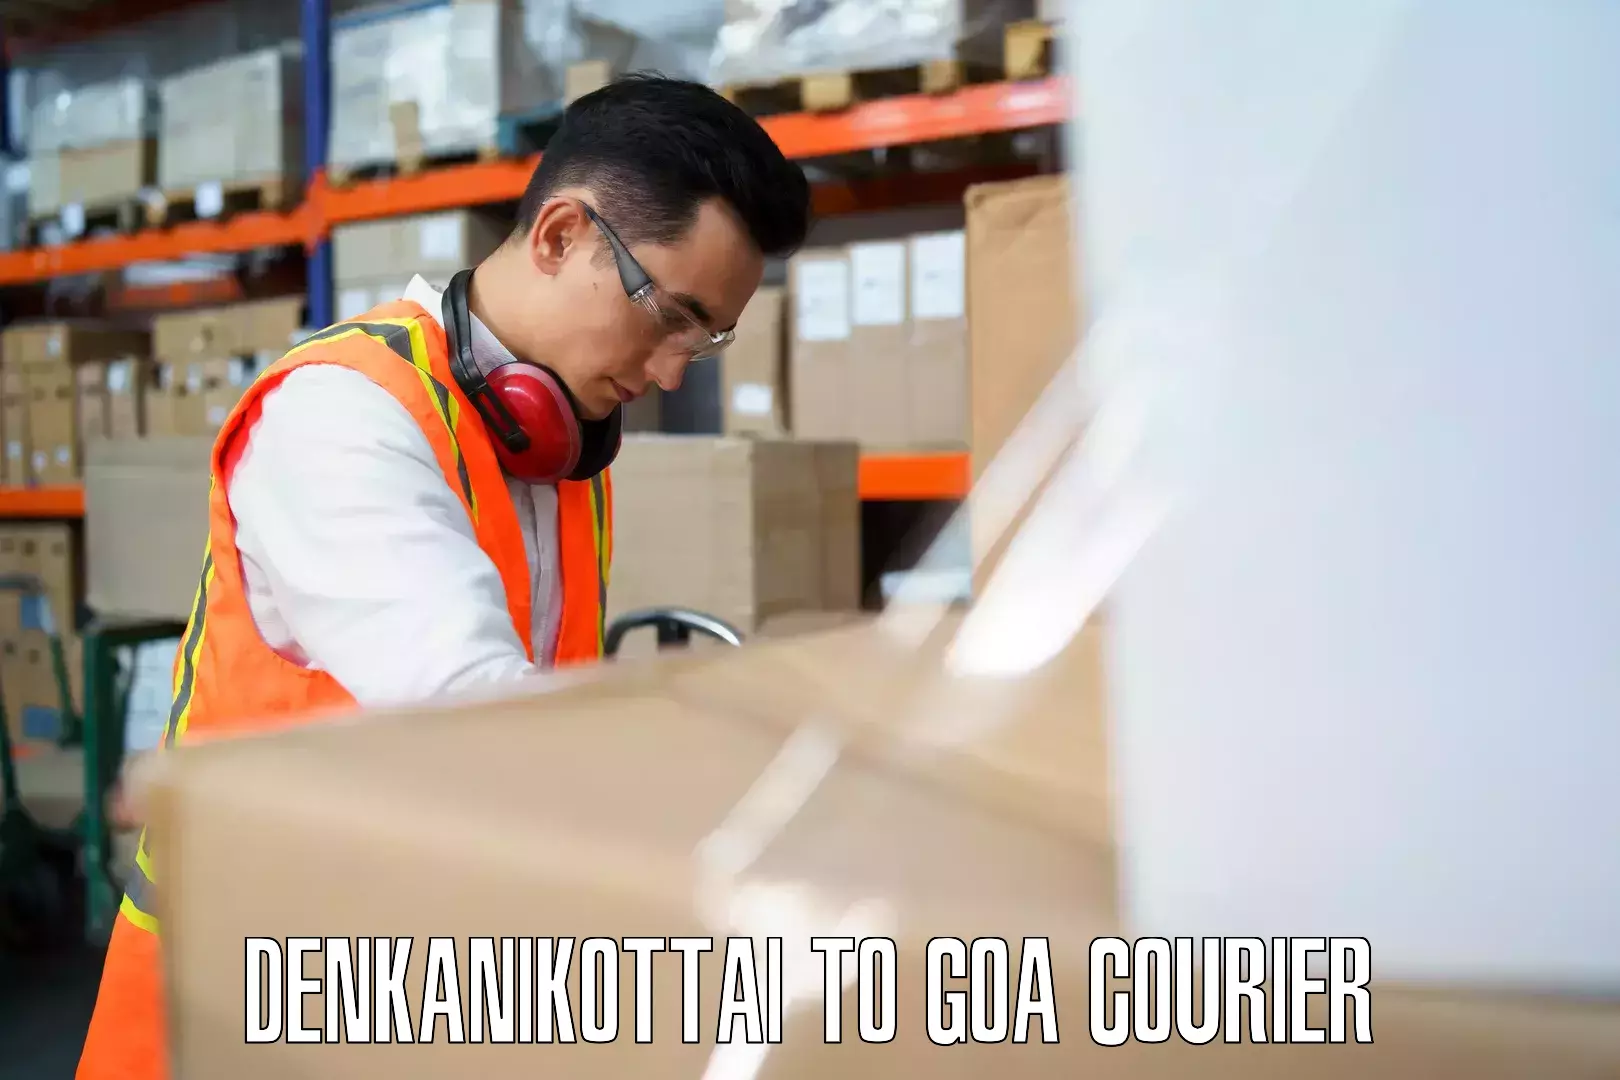 Baggage transport technology Denkanikottai to NIT Goa